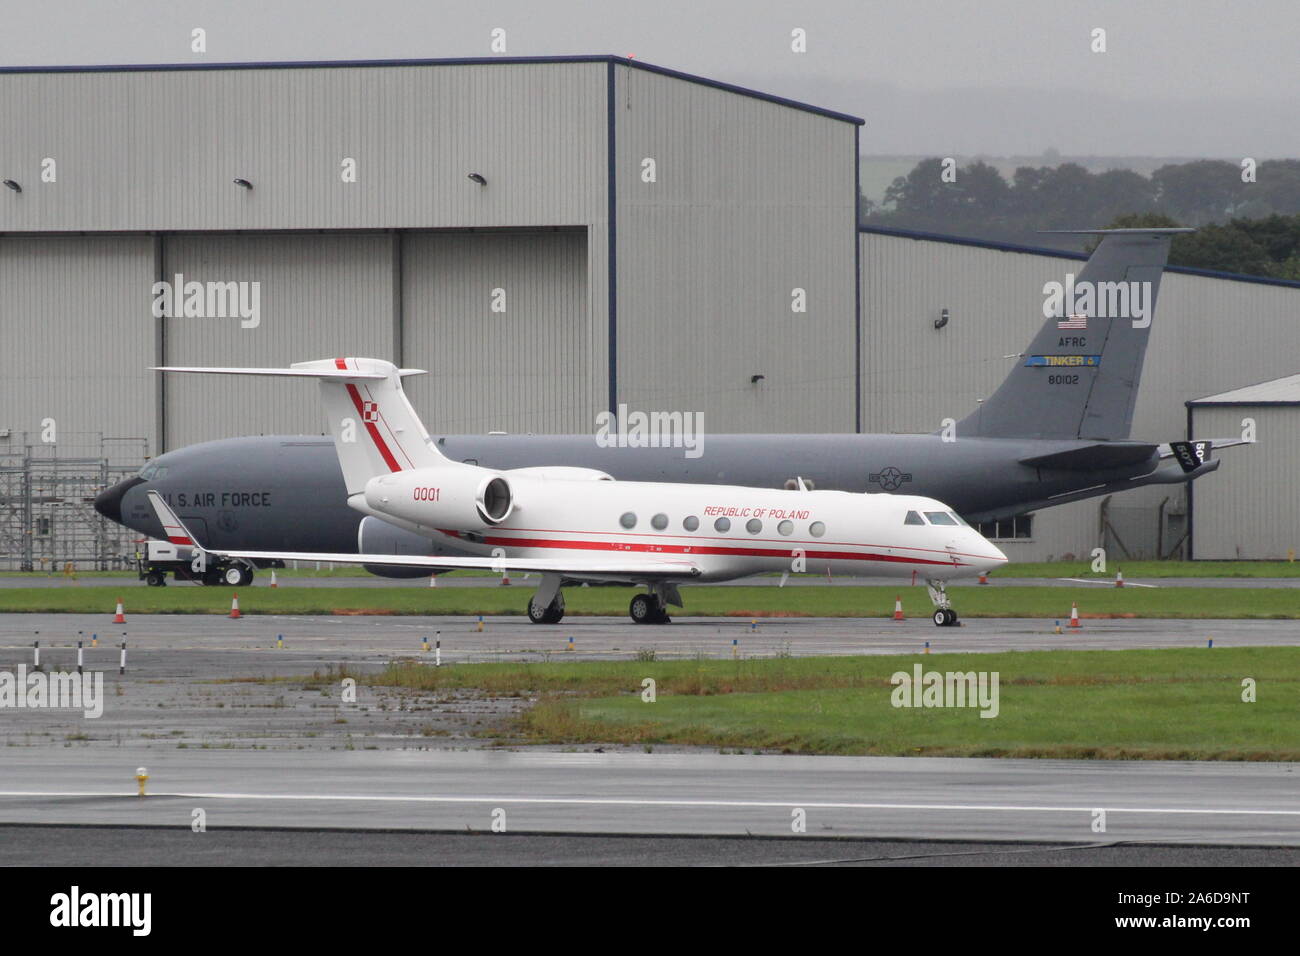 0001, einer von zwei Gulfstream Aerospace G550 VIP-Transport Aircraft mit der polnischen Luftwaffe dienen, am Internationalen Flughafen Prestwick, Ayrshire. Stockfoto